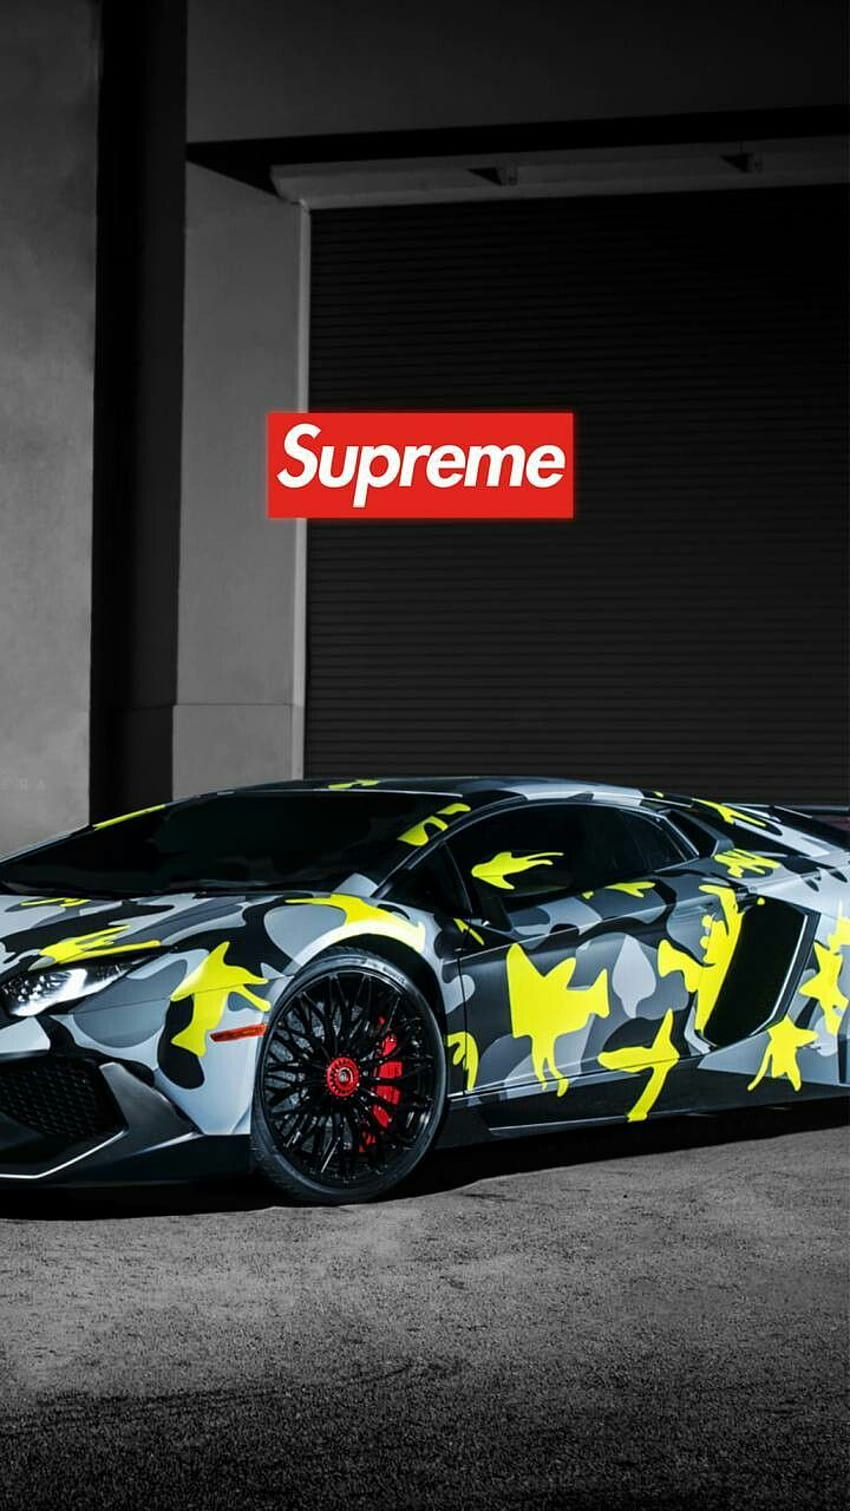 Supreme car  Supreme wallpaper hd, Supreme wallpaper, Supreme iphone  wallpaper